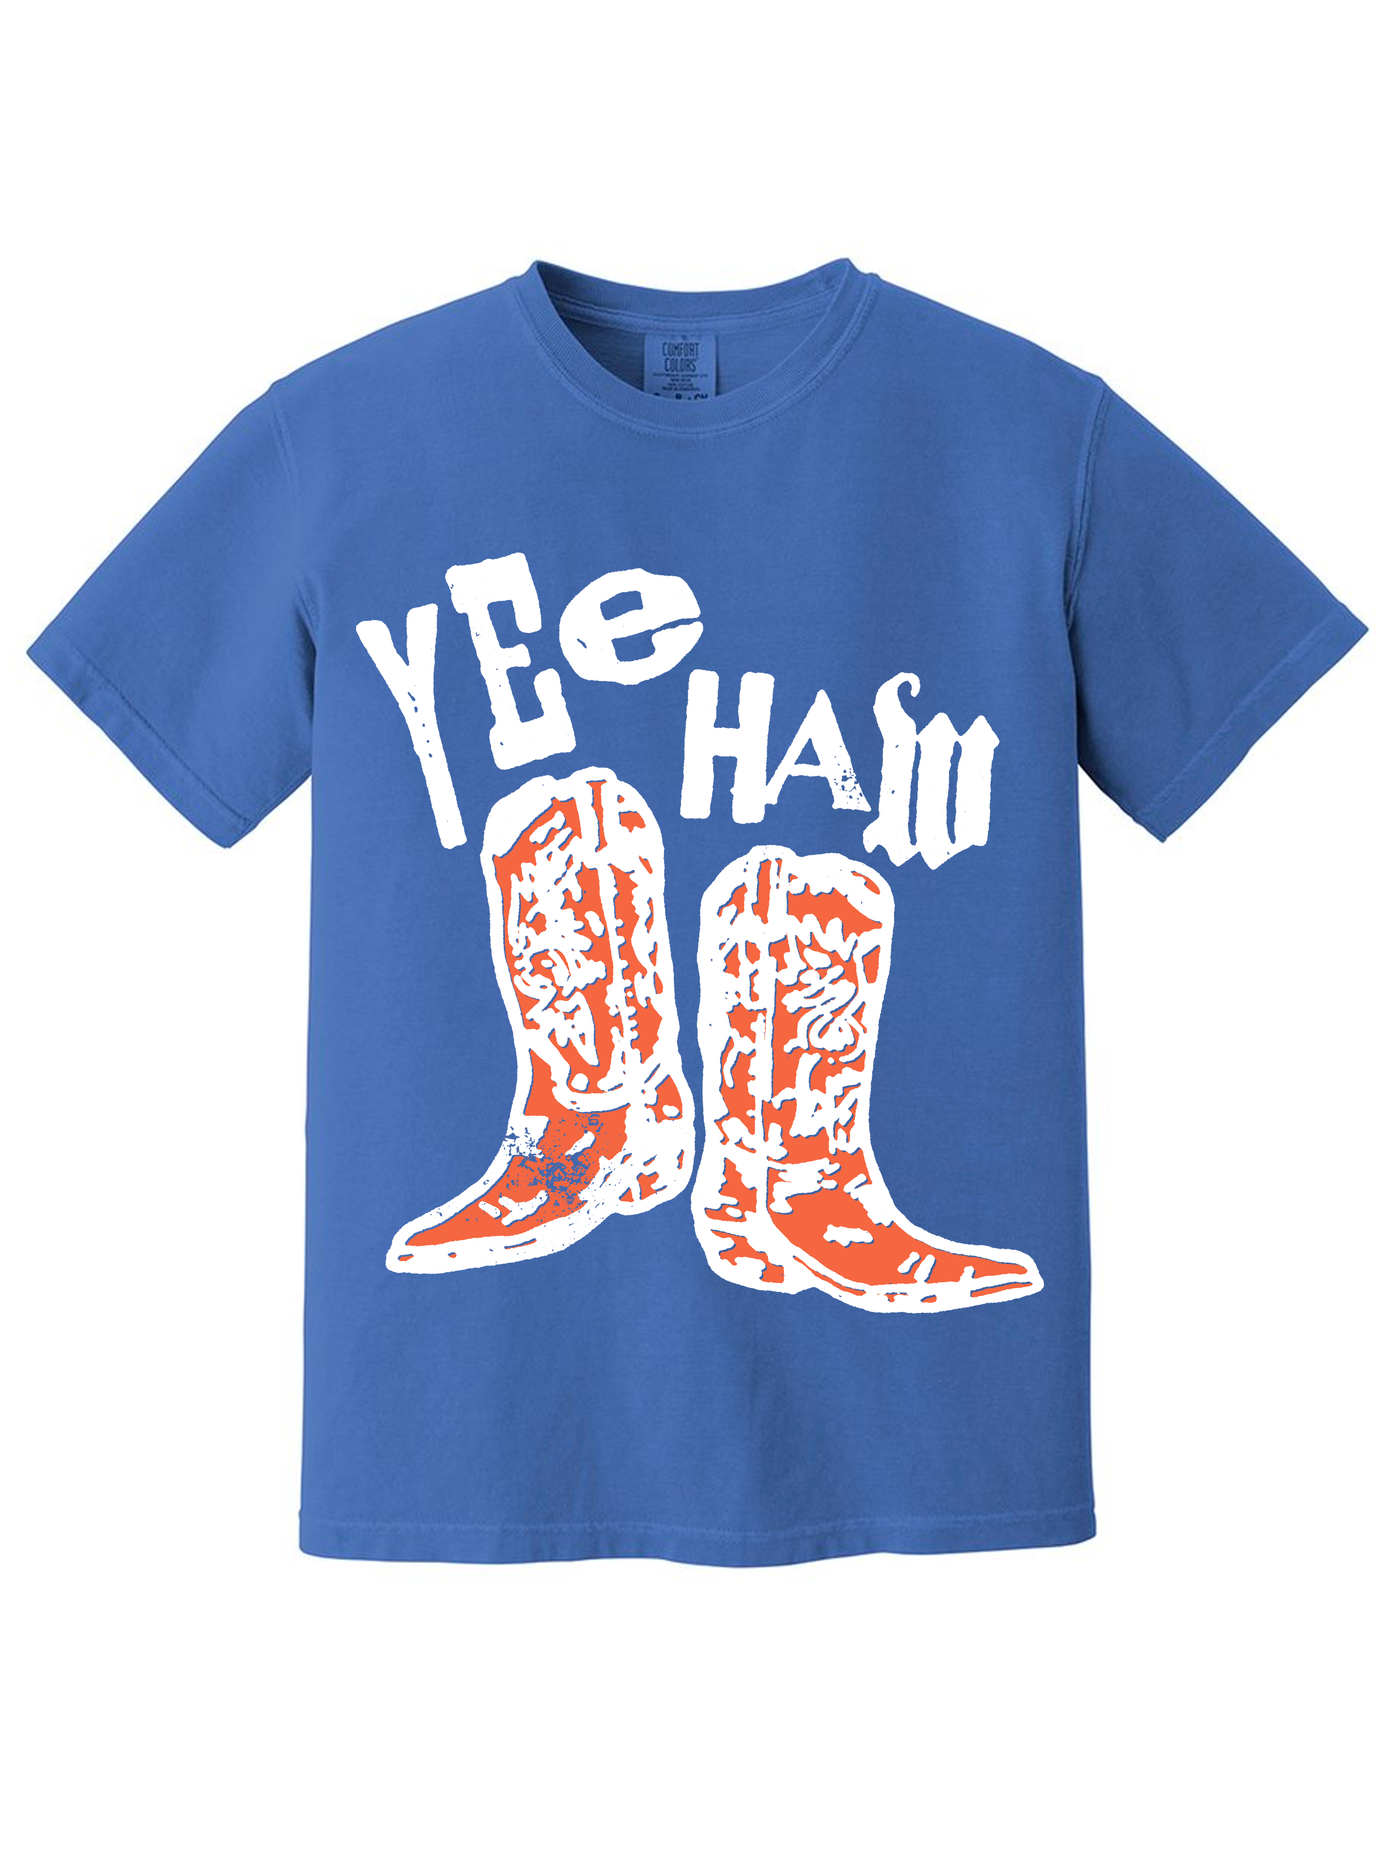 Yee Haw Boots Tee/Sweatshirt